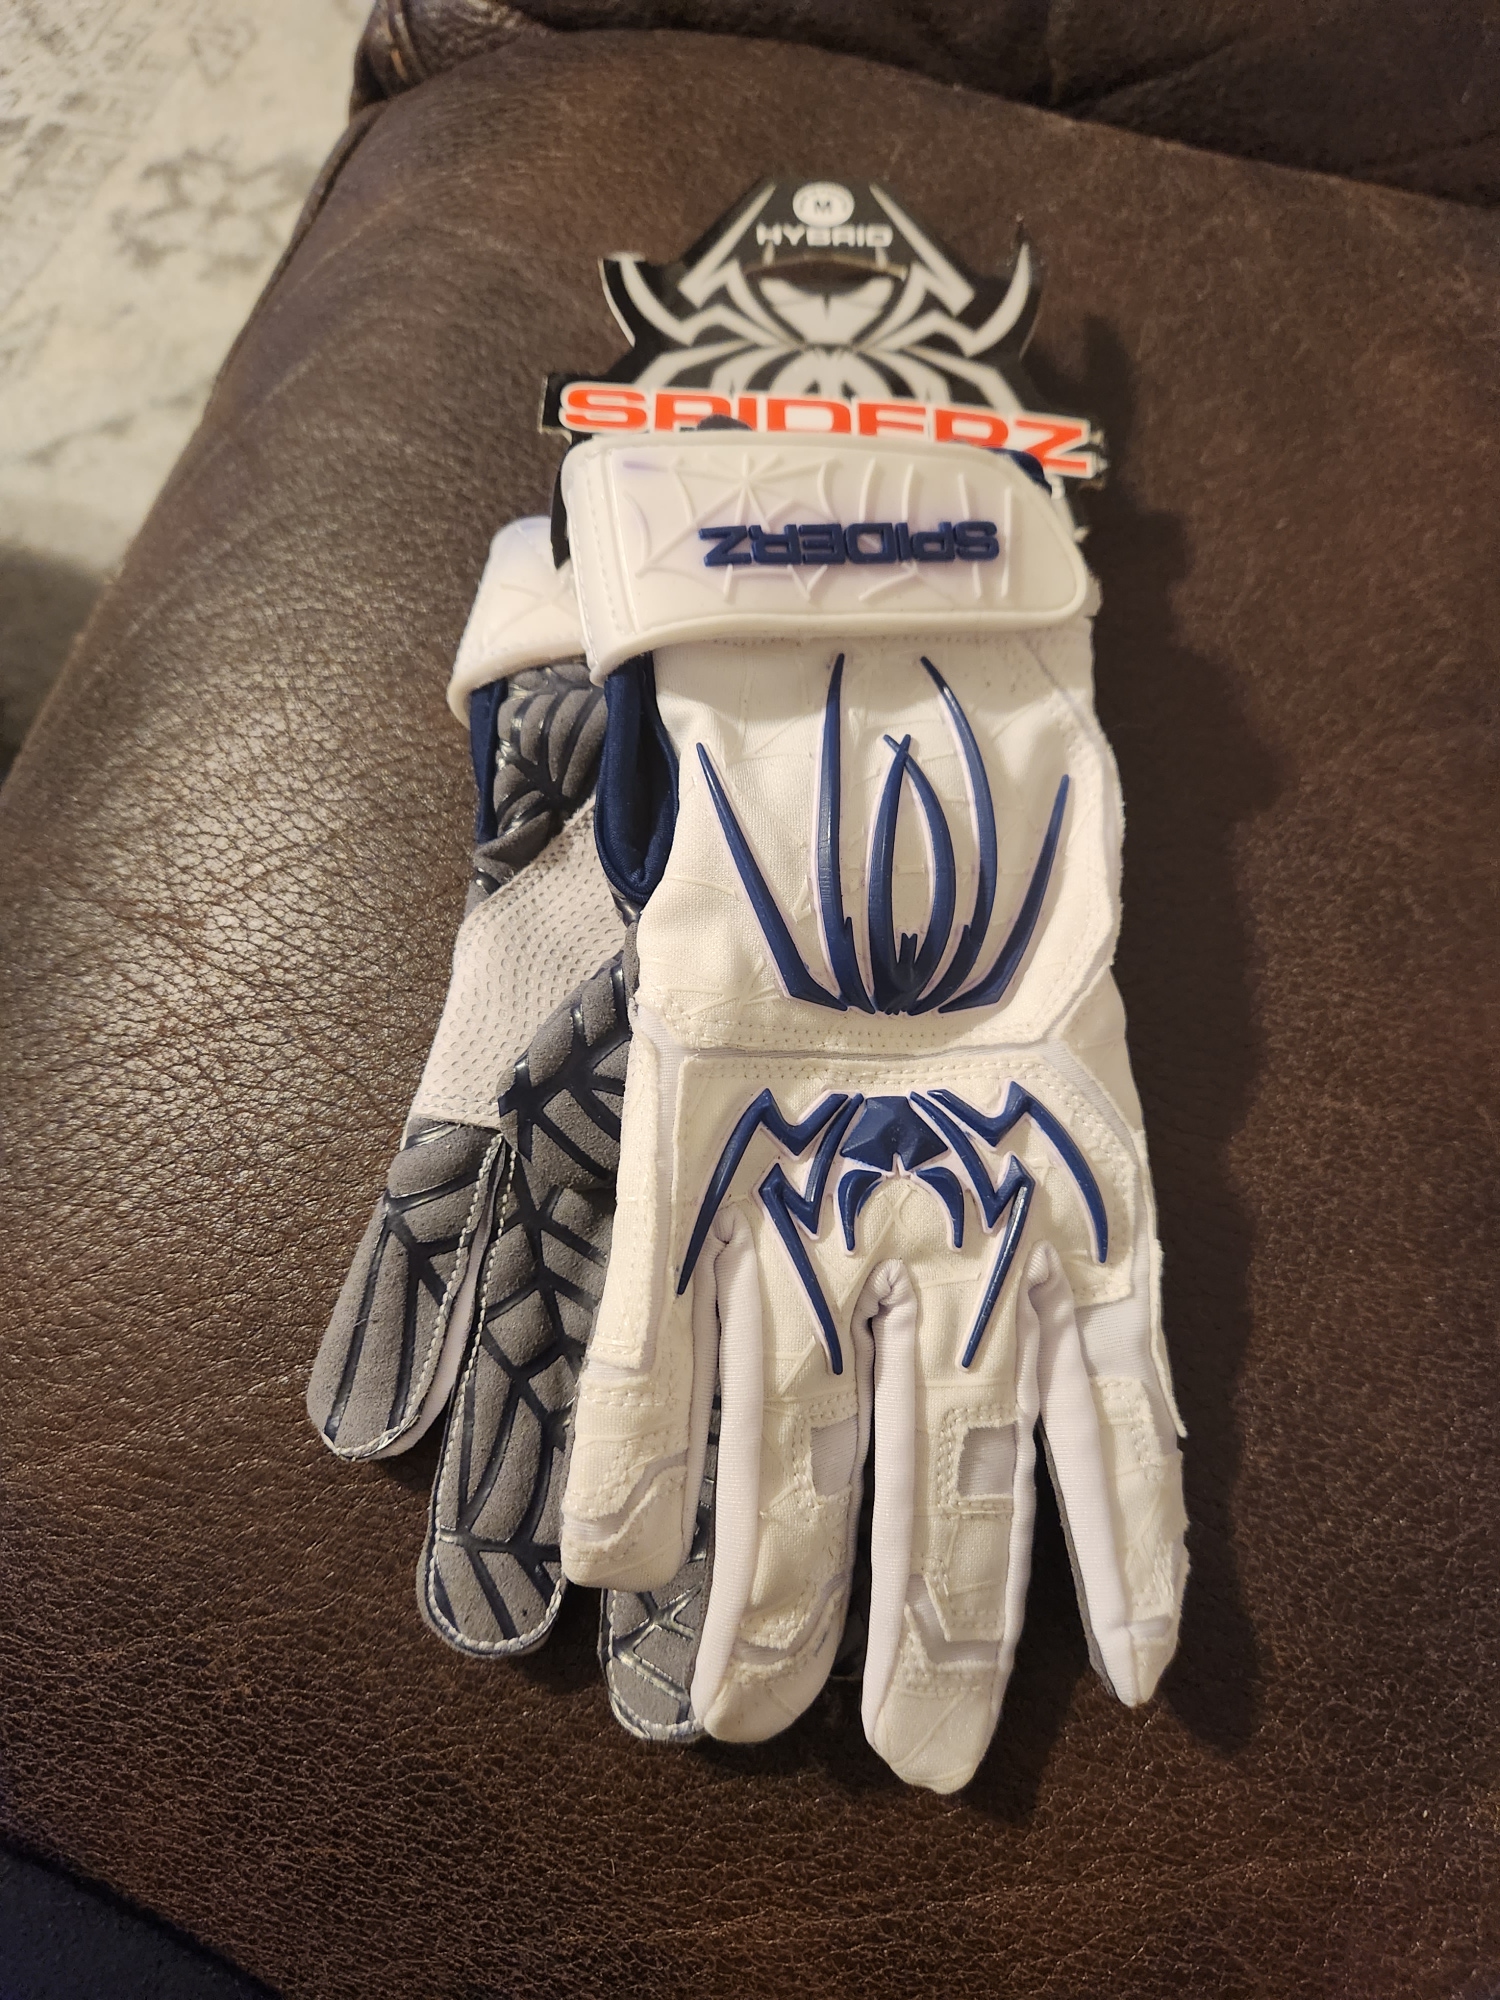 New Medium Batting Gloves